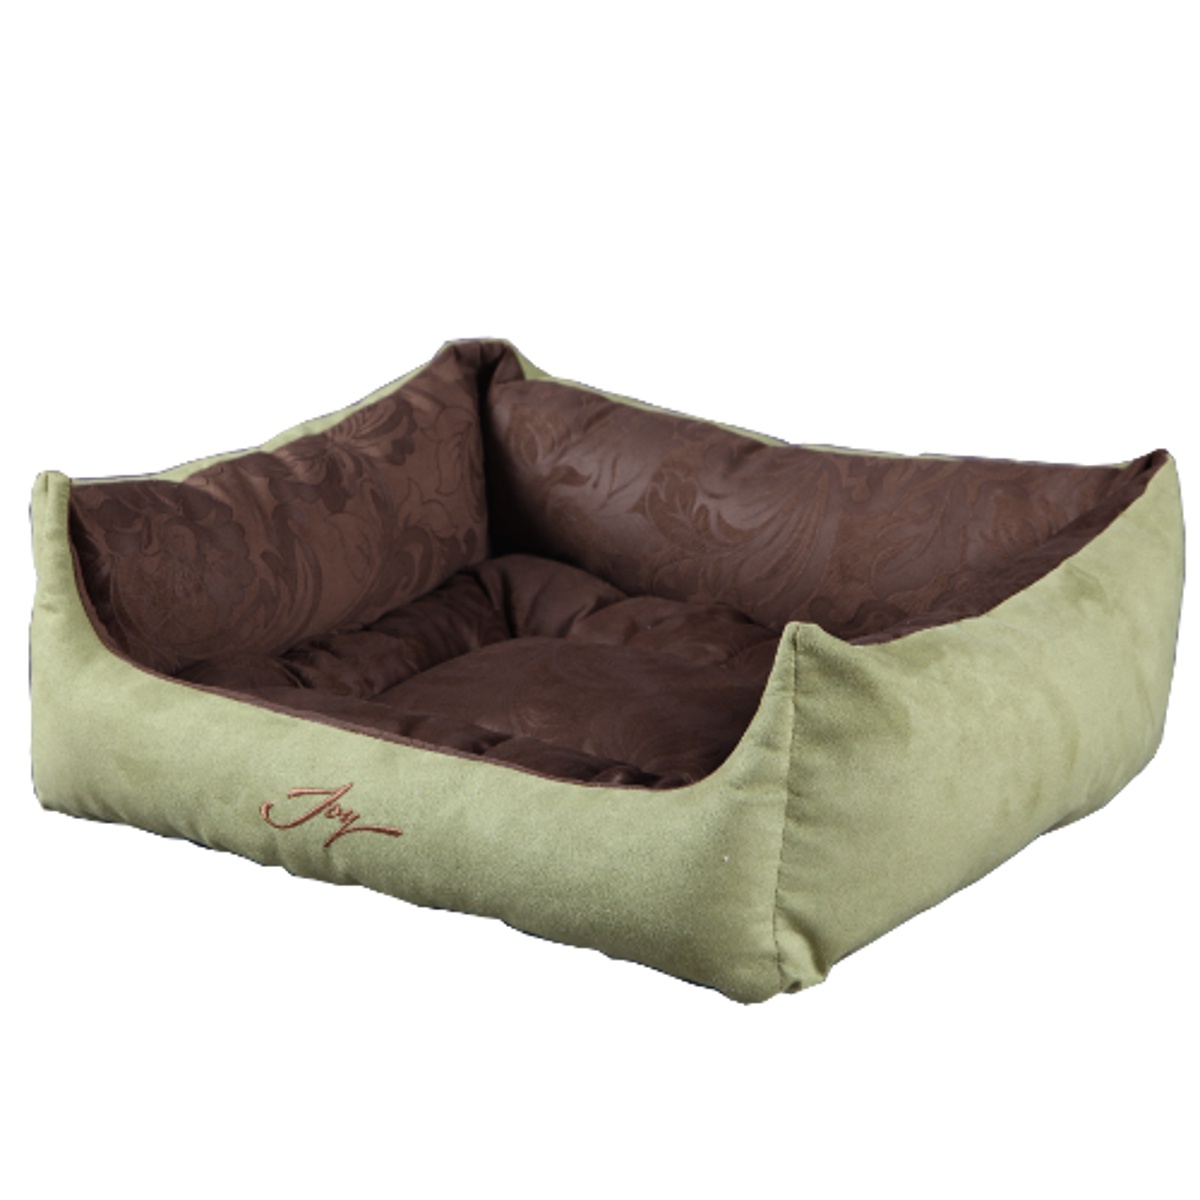 Лежак для животных JOY Лежанка квадратная 50х43х19см для кошек и собак, зеленый, коричневый